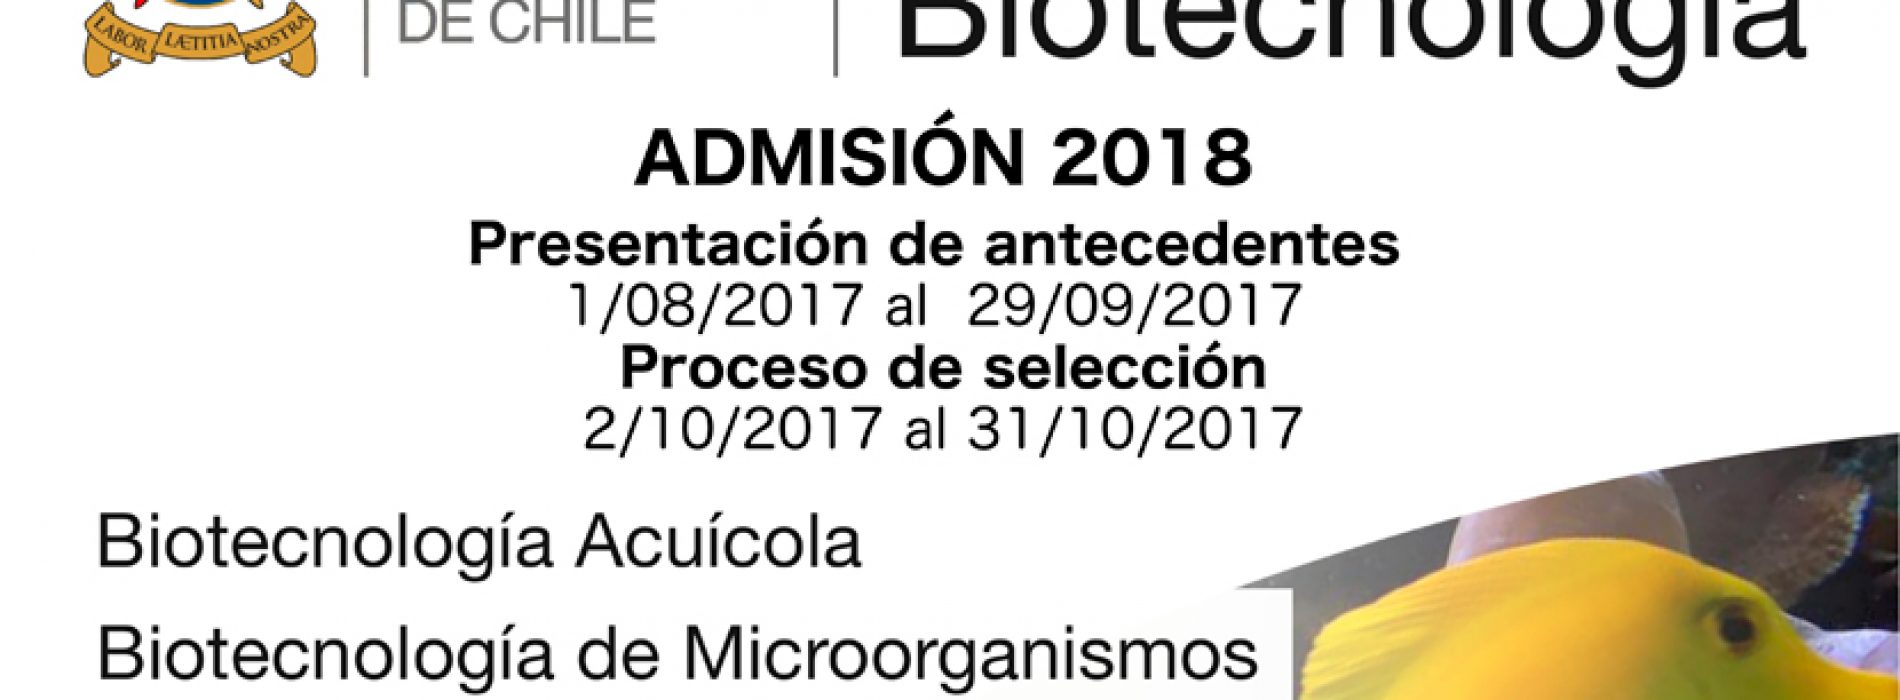 Proceso de Admisión del Doctorado en Biotecnología USACH